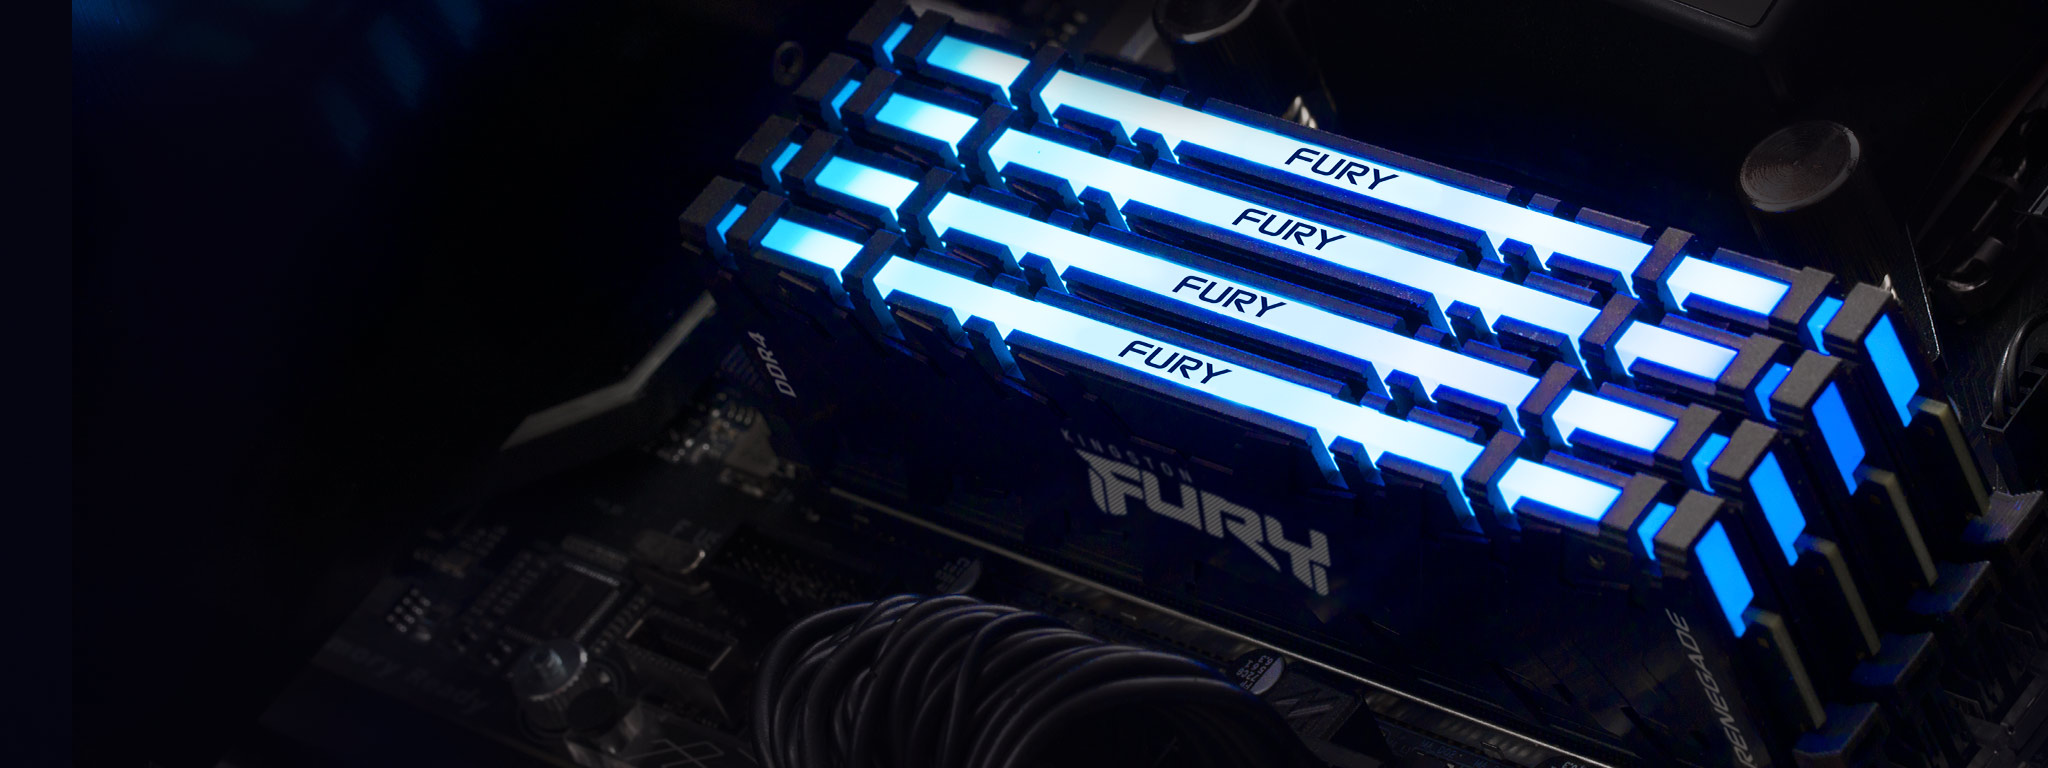 4 moduli di memoria Kingston FURY Renegade DDR4 RGB illuminati di colore blu, installati negli alloggiamenti di una scheda madre